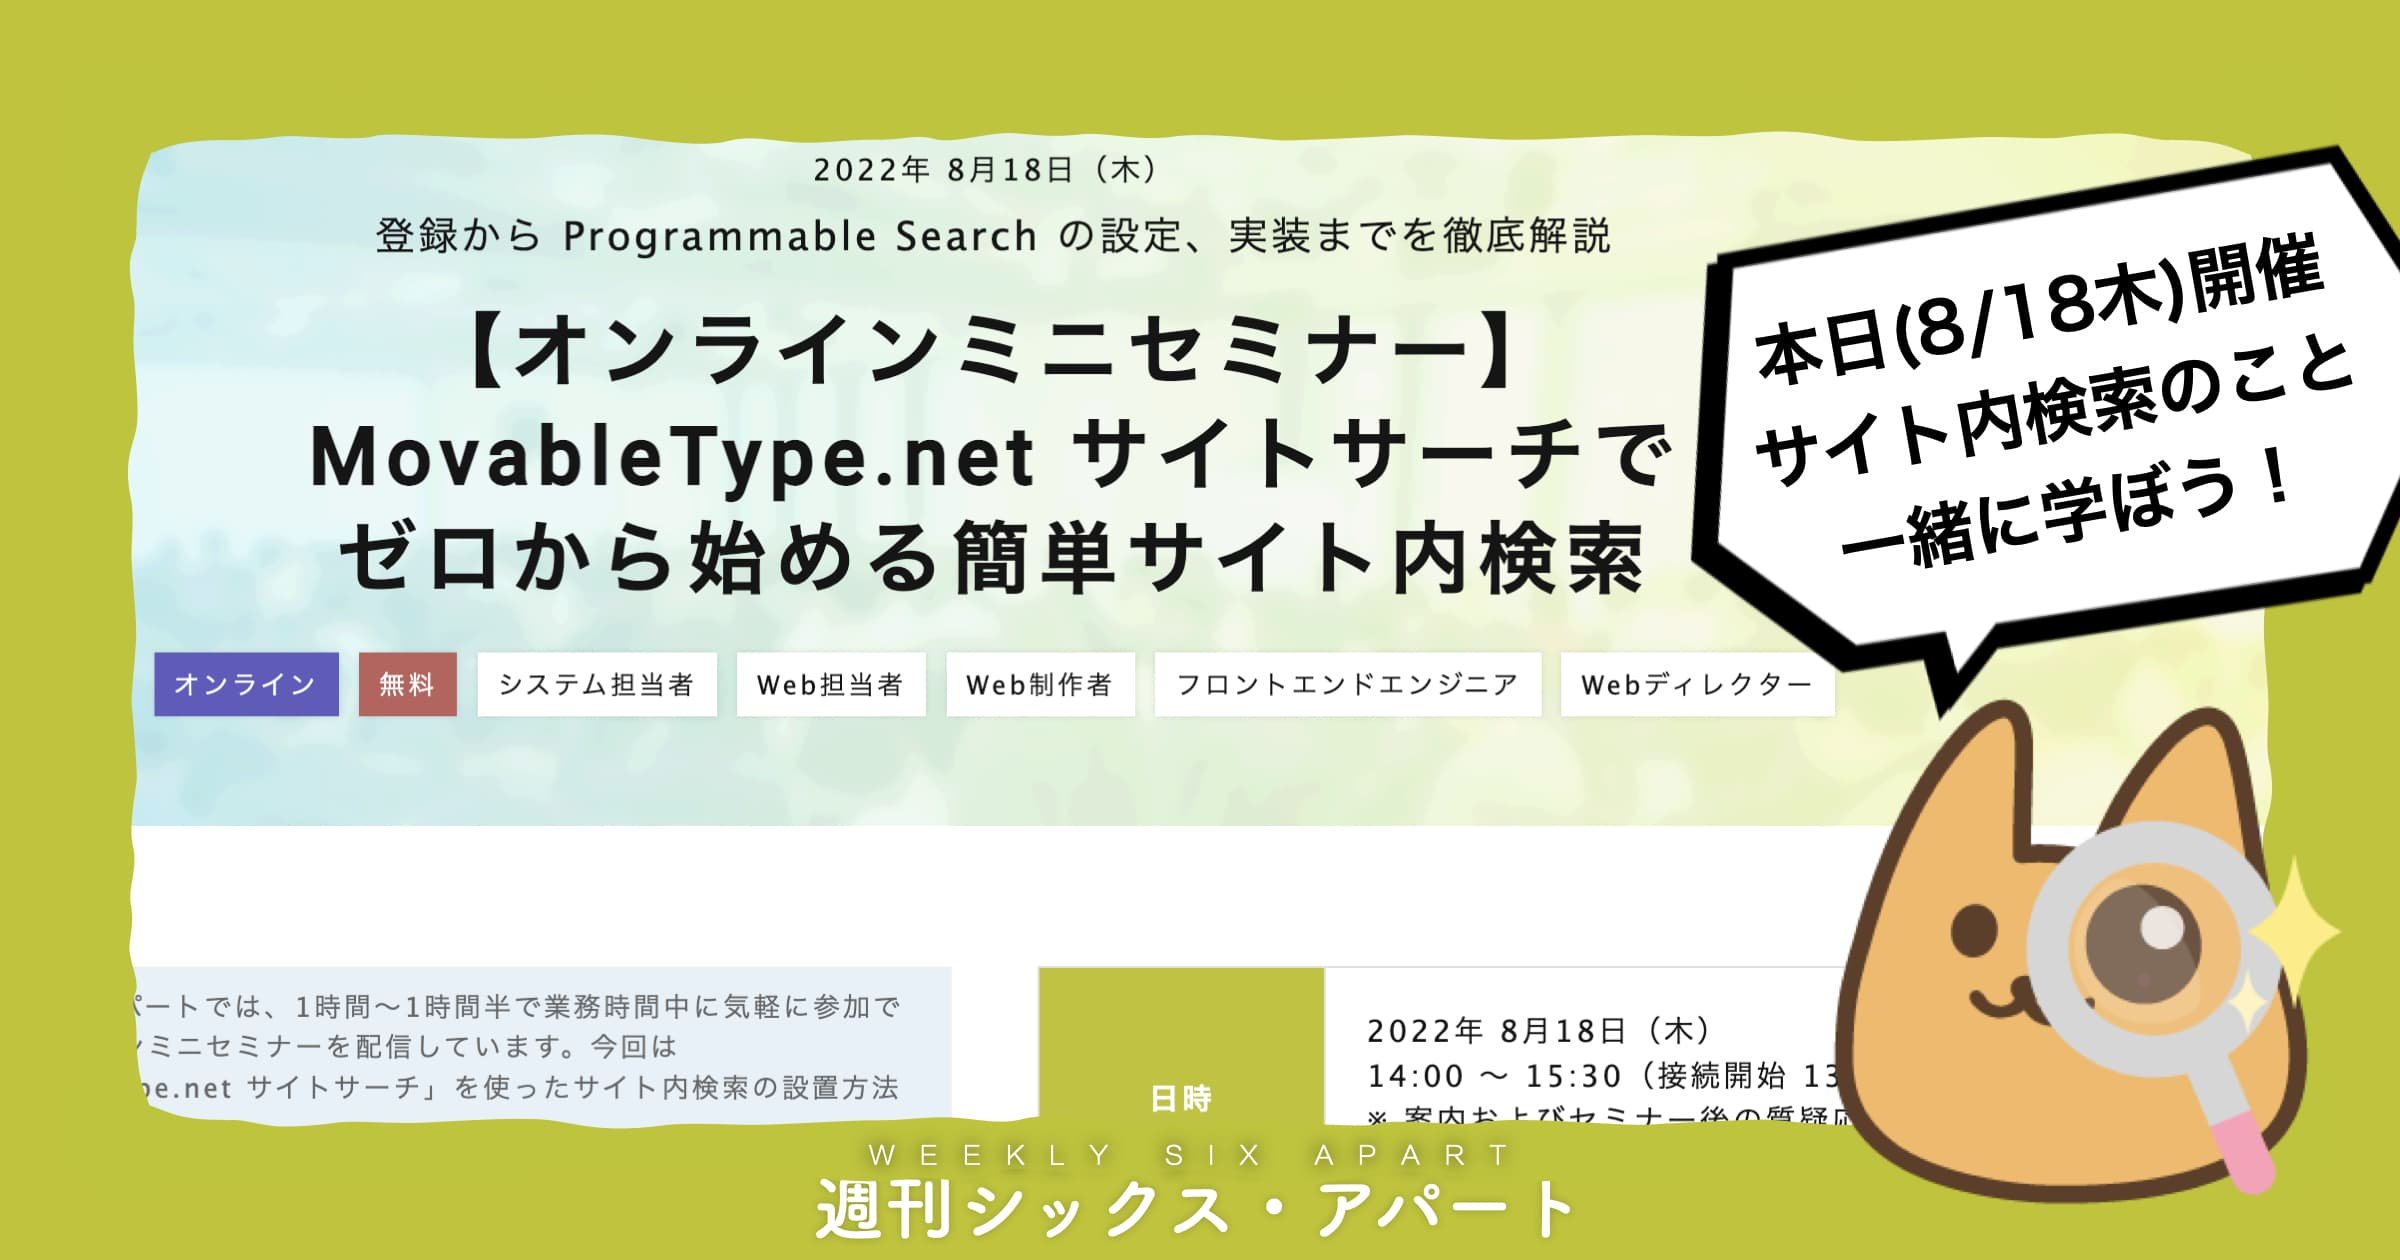 本日14時、オンラインミニセミナー「MovableType.net サイトサーチで ゼロから始める簡単サイト内検索」開催します #週刊SA